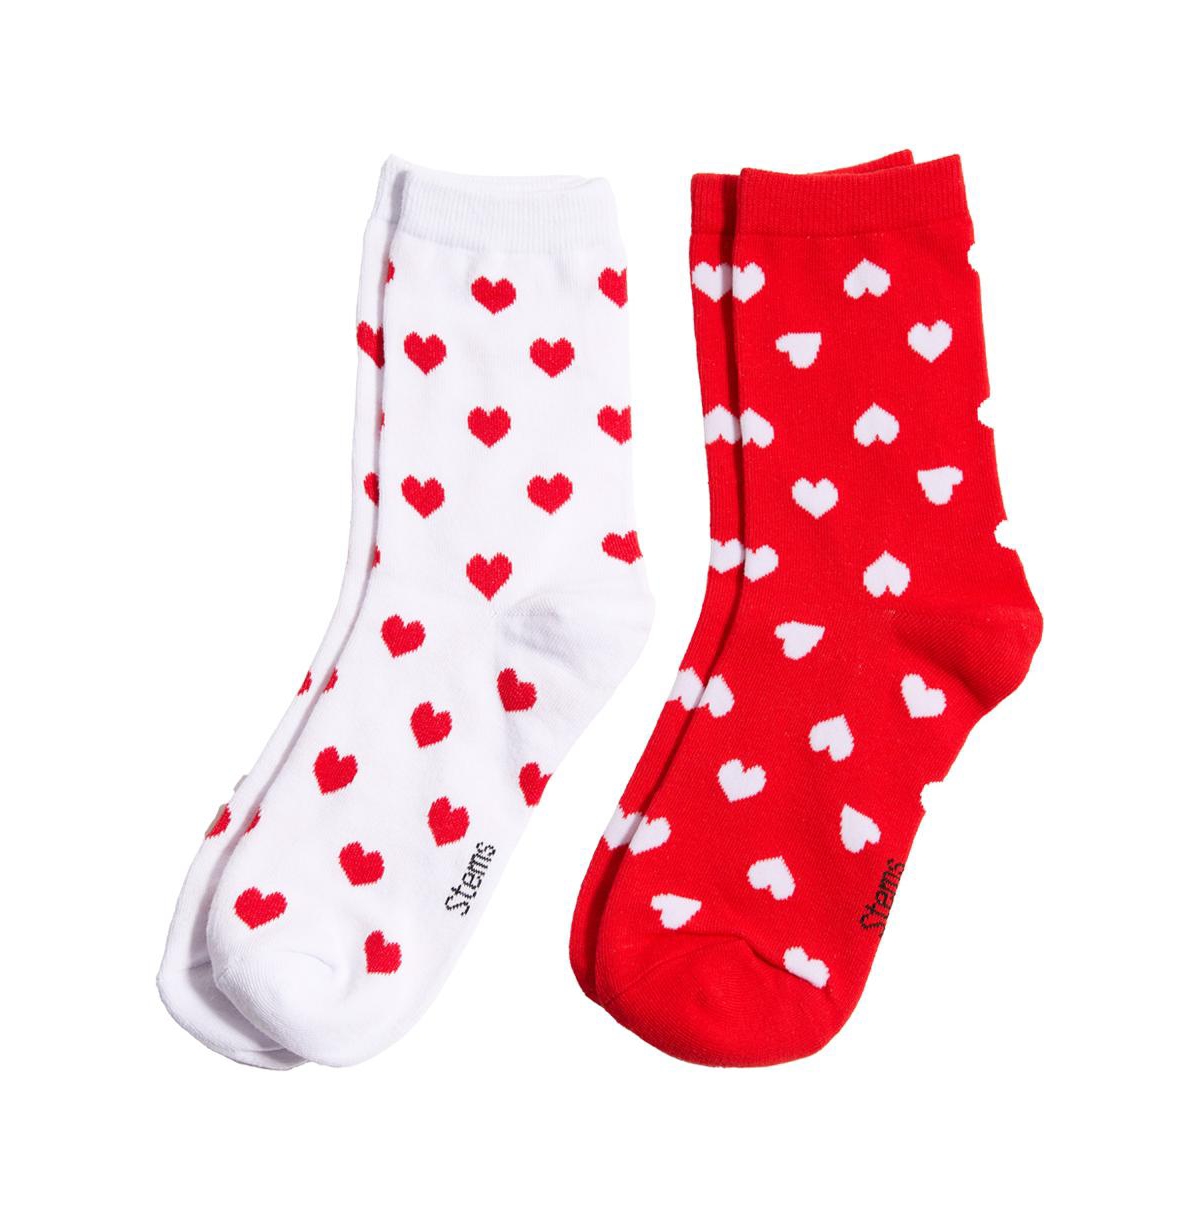 Women's Mini Heart Crew Socks Two Pack - Red/black